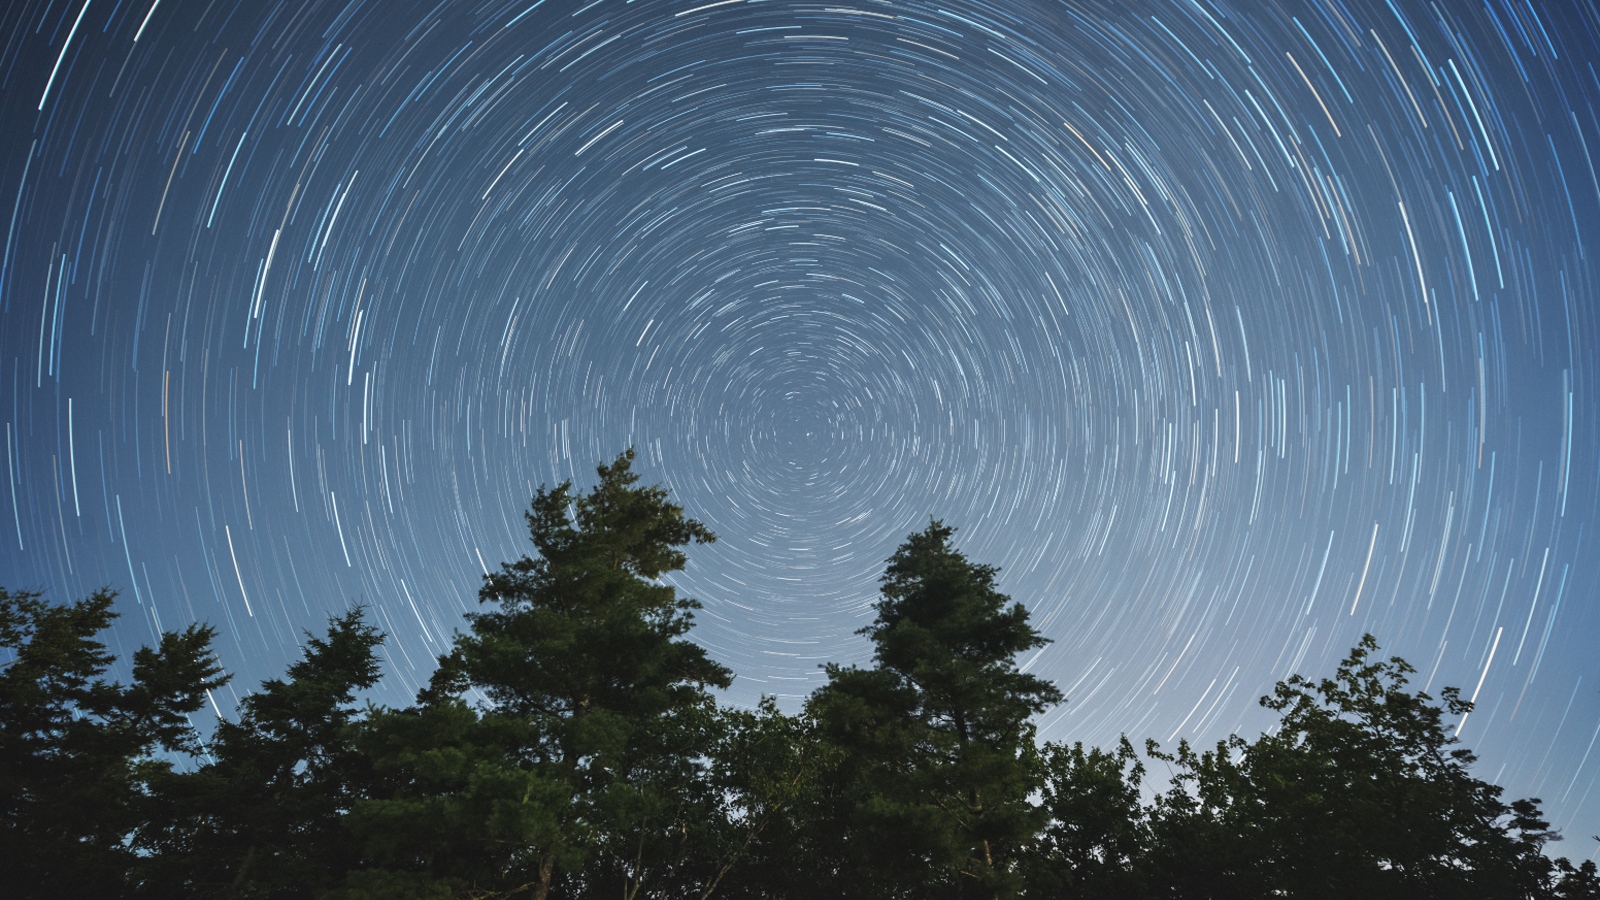 Líneas estelares en espiral en el cielo nocturno causadas por la rotación de la Tierra